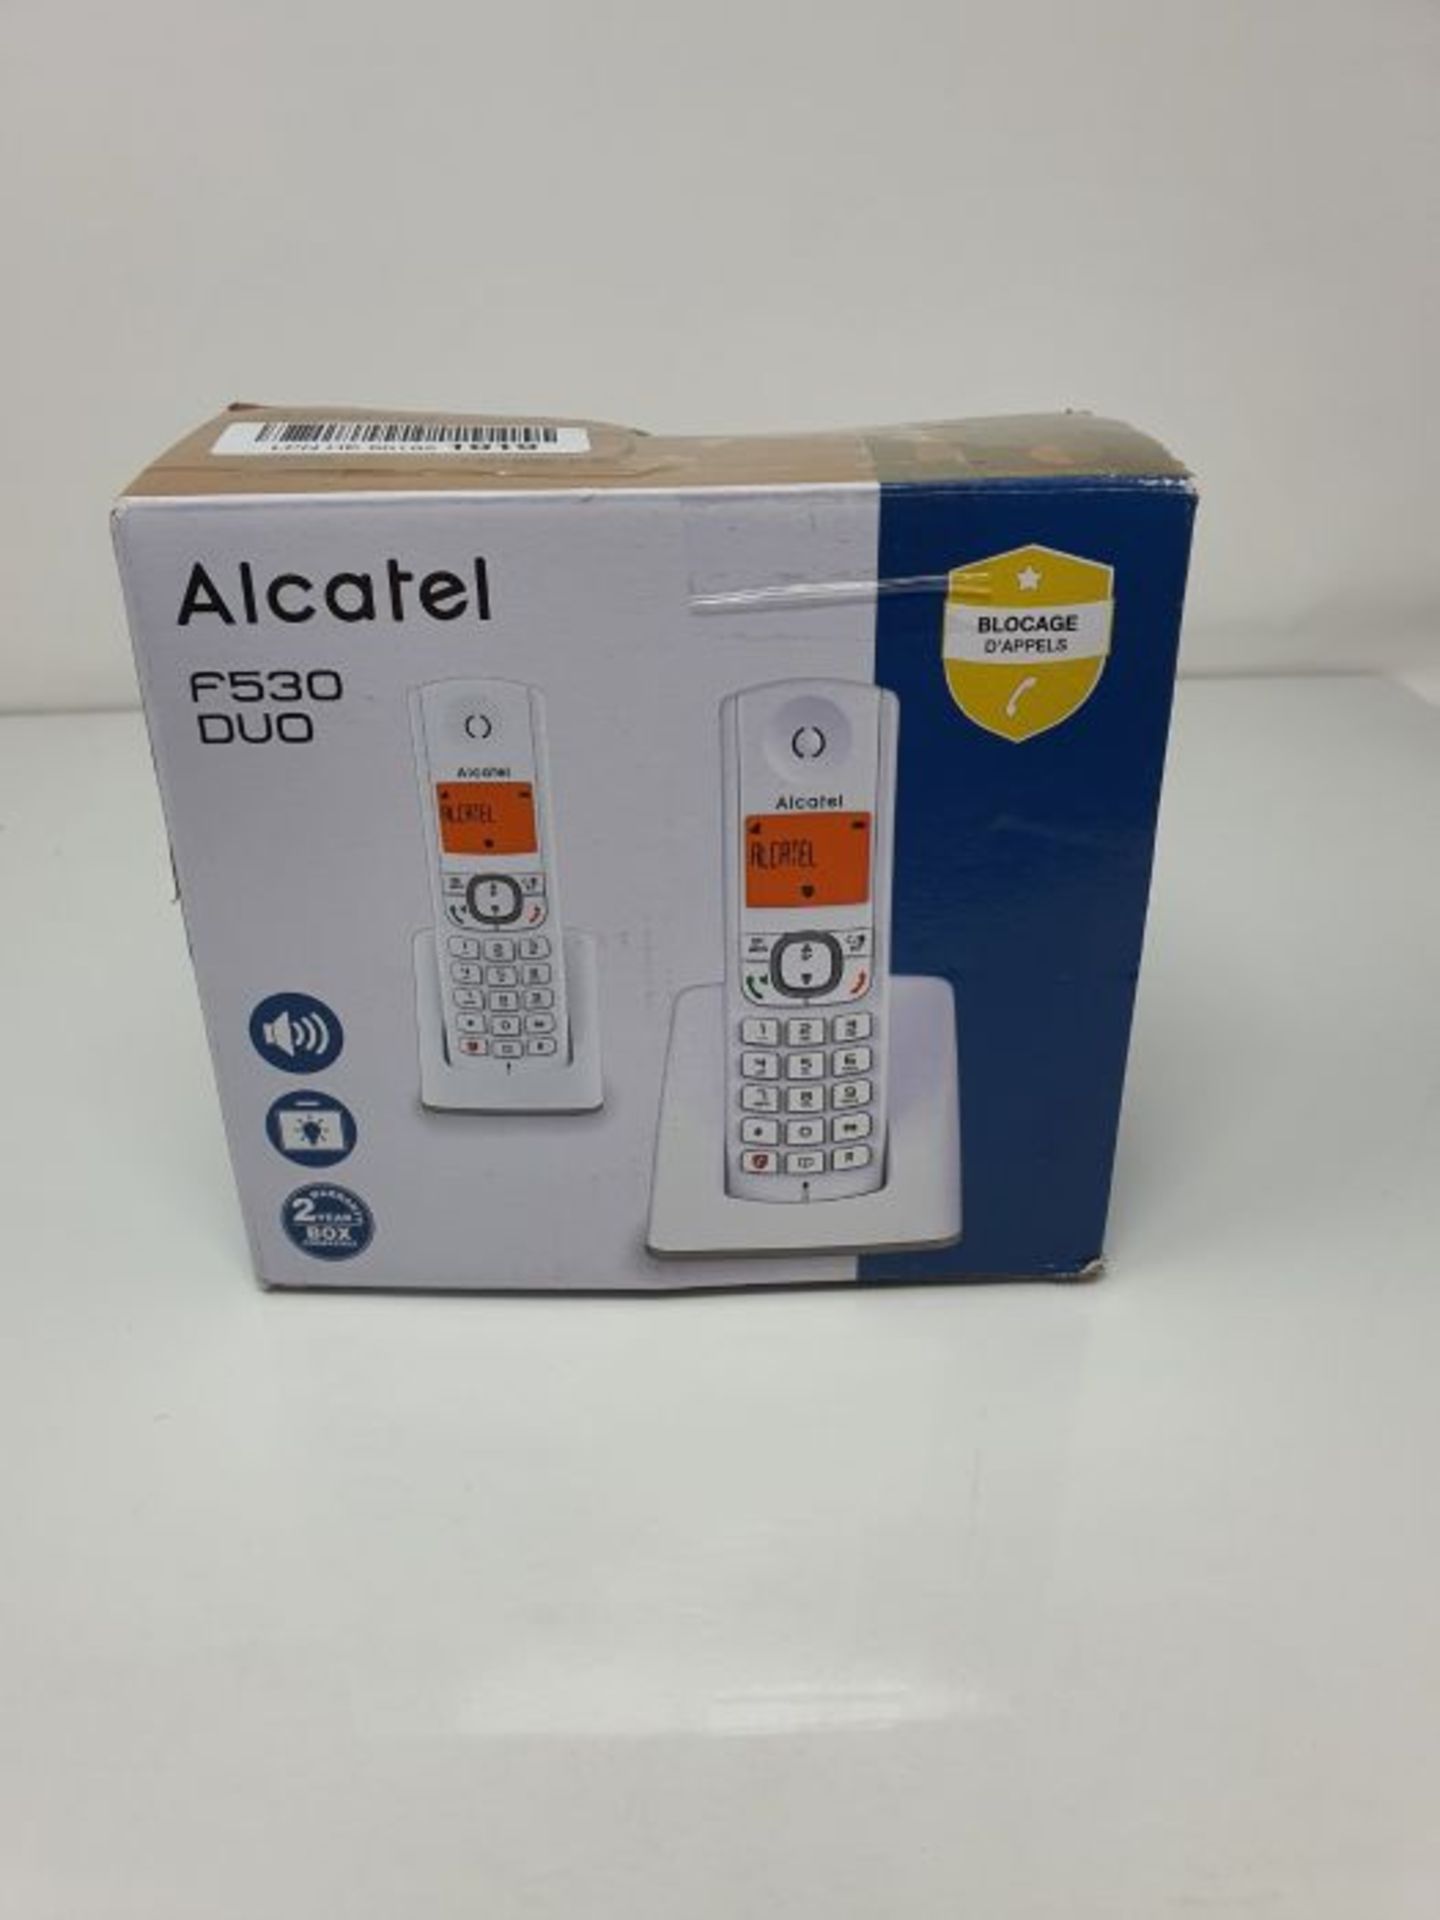 Alcatel F530 Duo White - Image 2 of 3